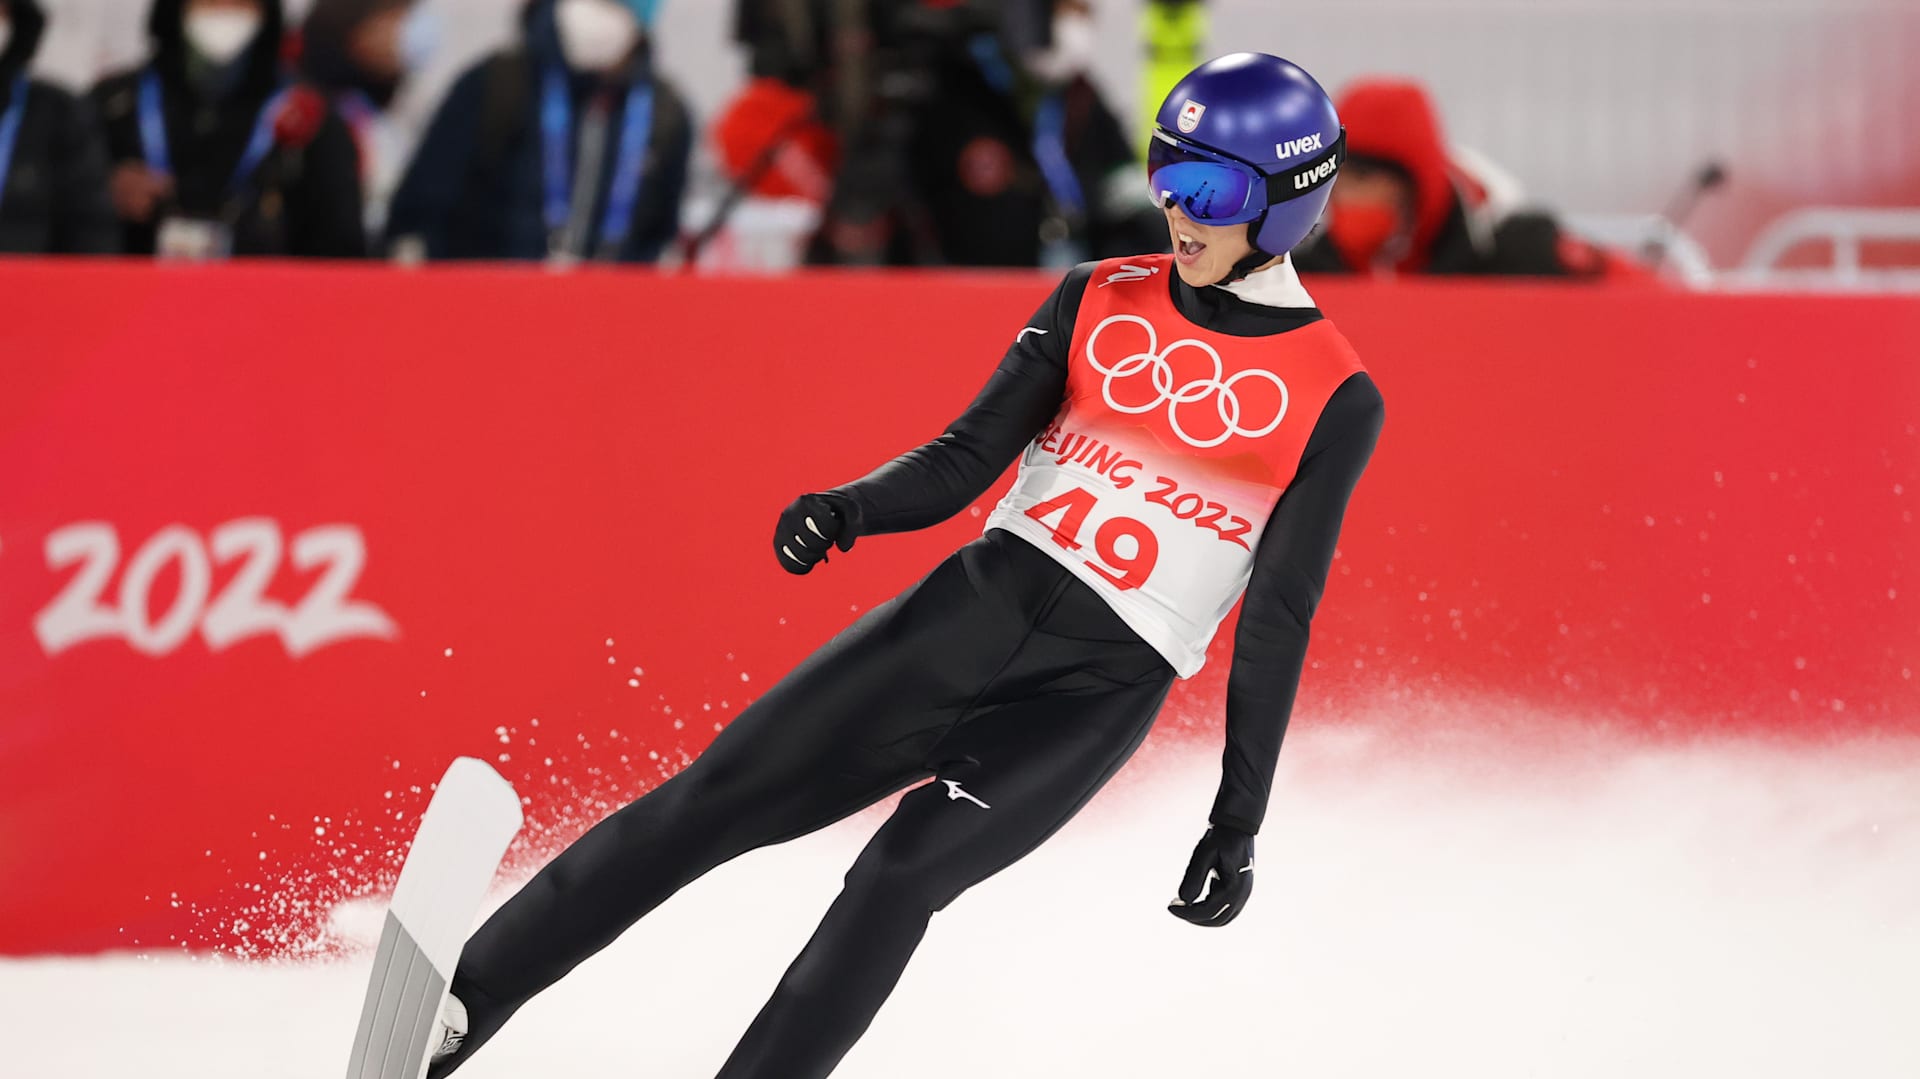 【メダル決定】小林陵侑が金メダル! 北京2022スキージャンプ男子 